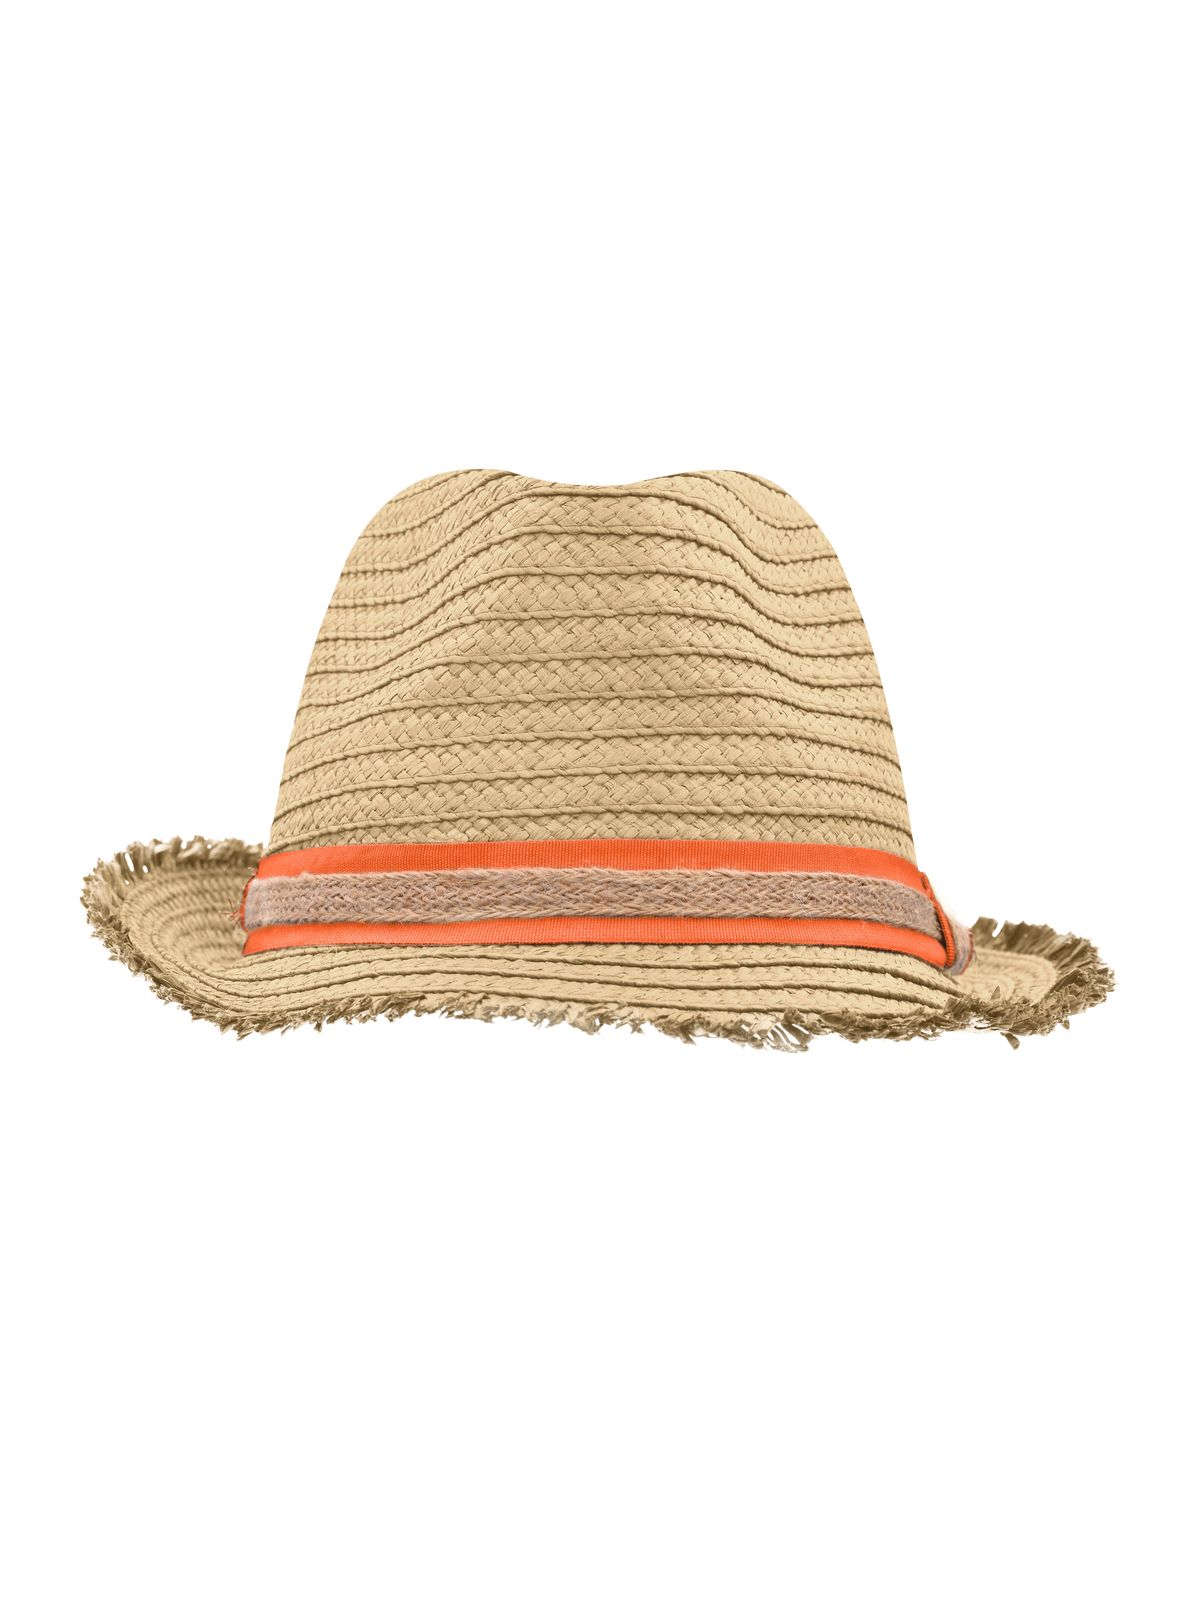 trendy-summer-hat-straw-orange.webp